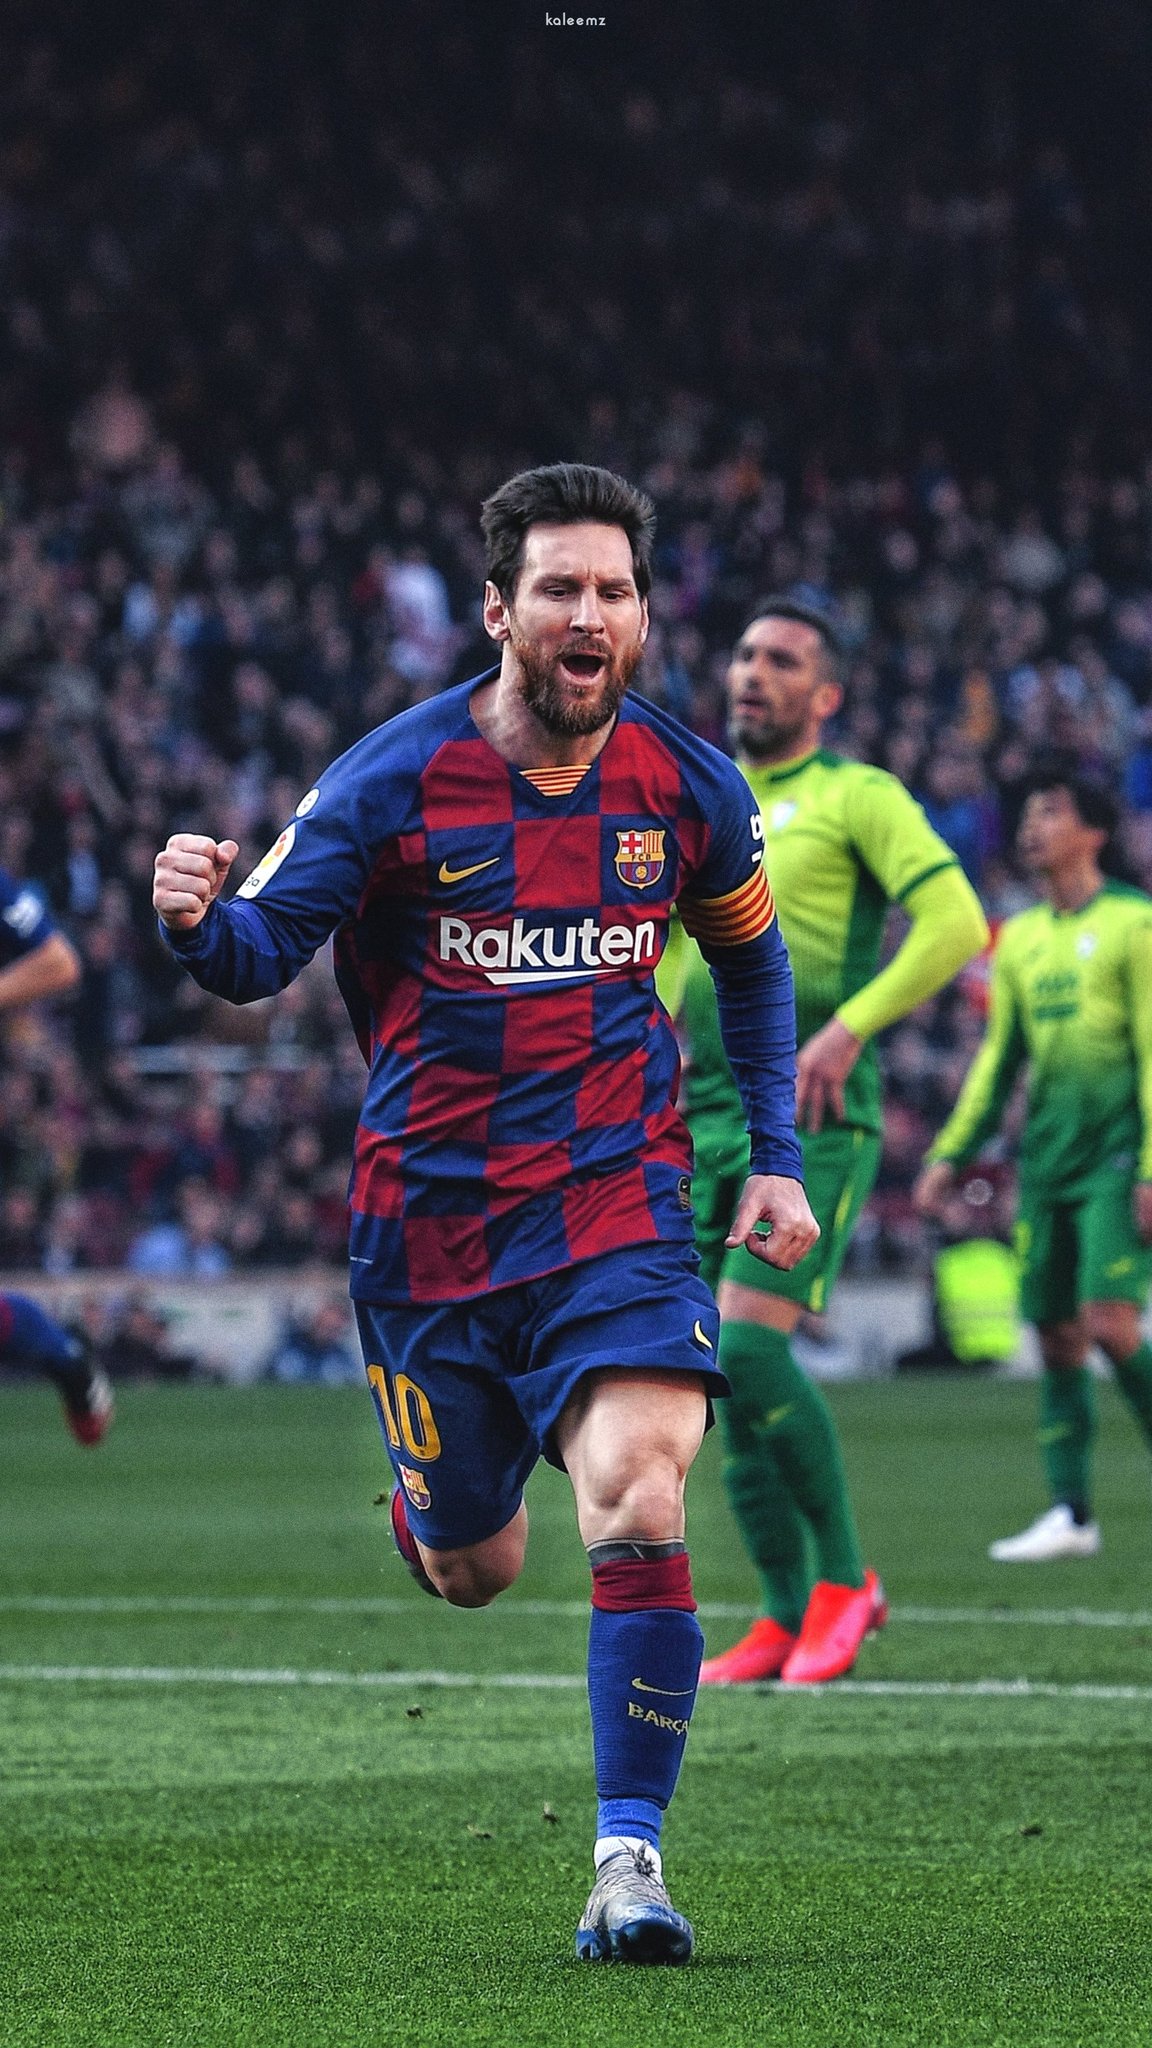 Sự ăn mừng của Messi luôn được mong đợi sau mỗi bàn thắng. Hãy xem bộ sưu tập ảnh sự ăn mừng của anh với những biểu cảm khác nhau. Từ niềm vui tột độ cho đến sự tập trung, bạn sẽ không thể bỏ qua những khoảnh khắc đặc biệt này.